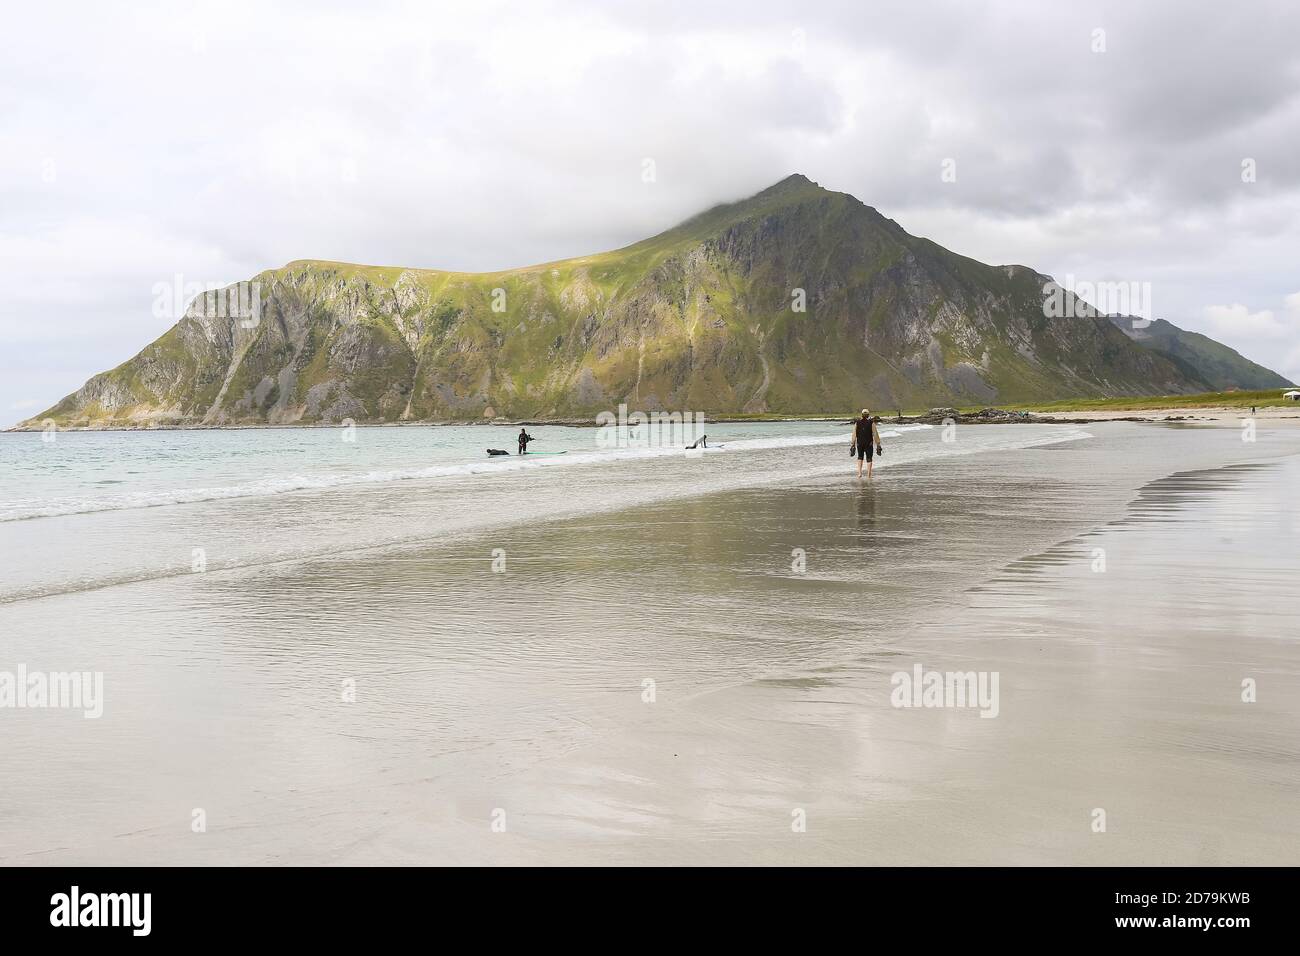 Flakstad Sandstrand auf den norwegischen Lofoten Inseln, beliebter Ort für Surfen und Sommerurlaub Stockfoto